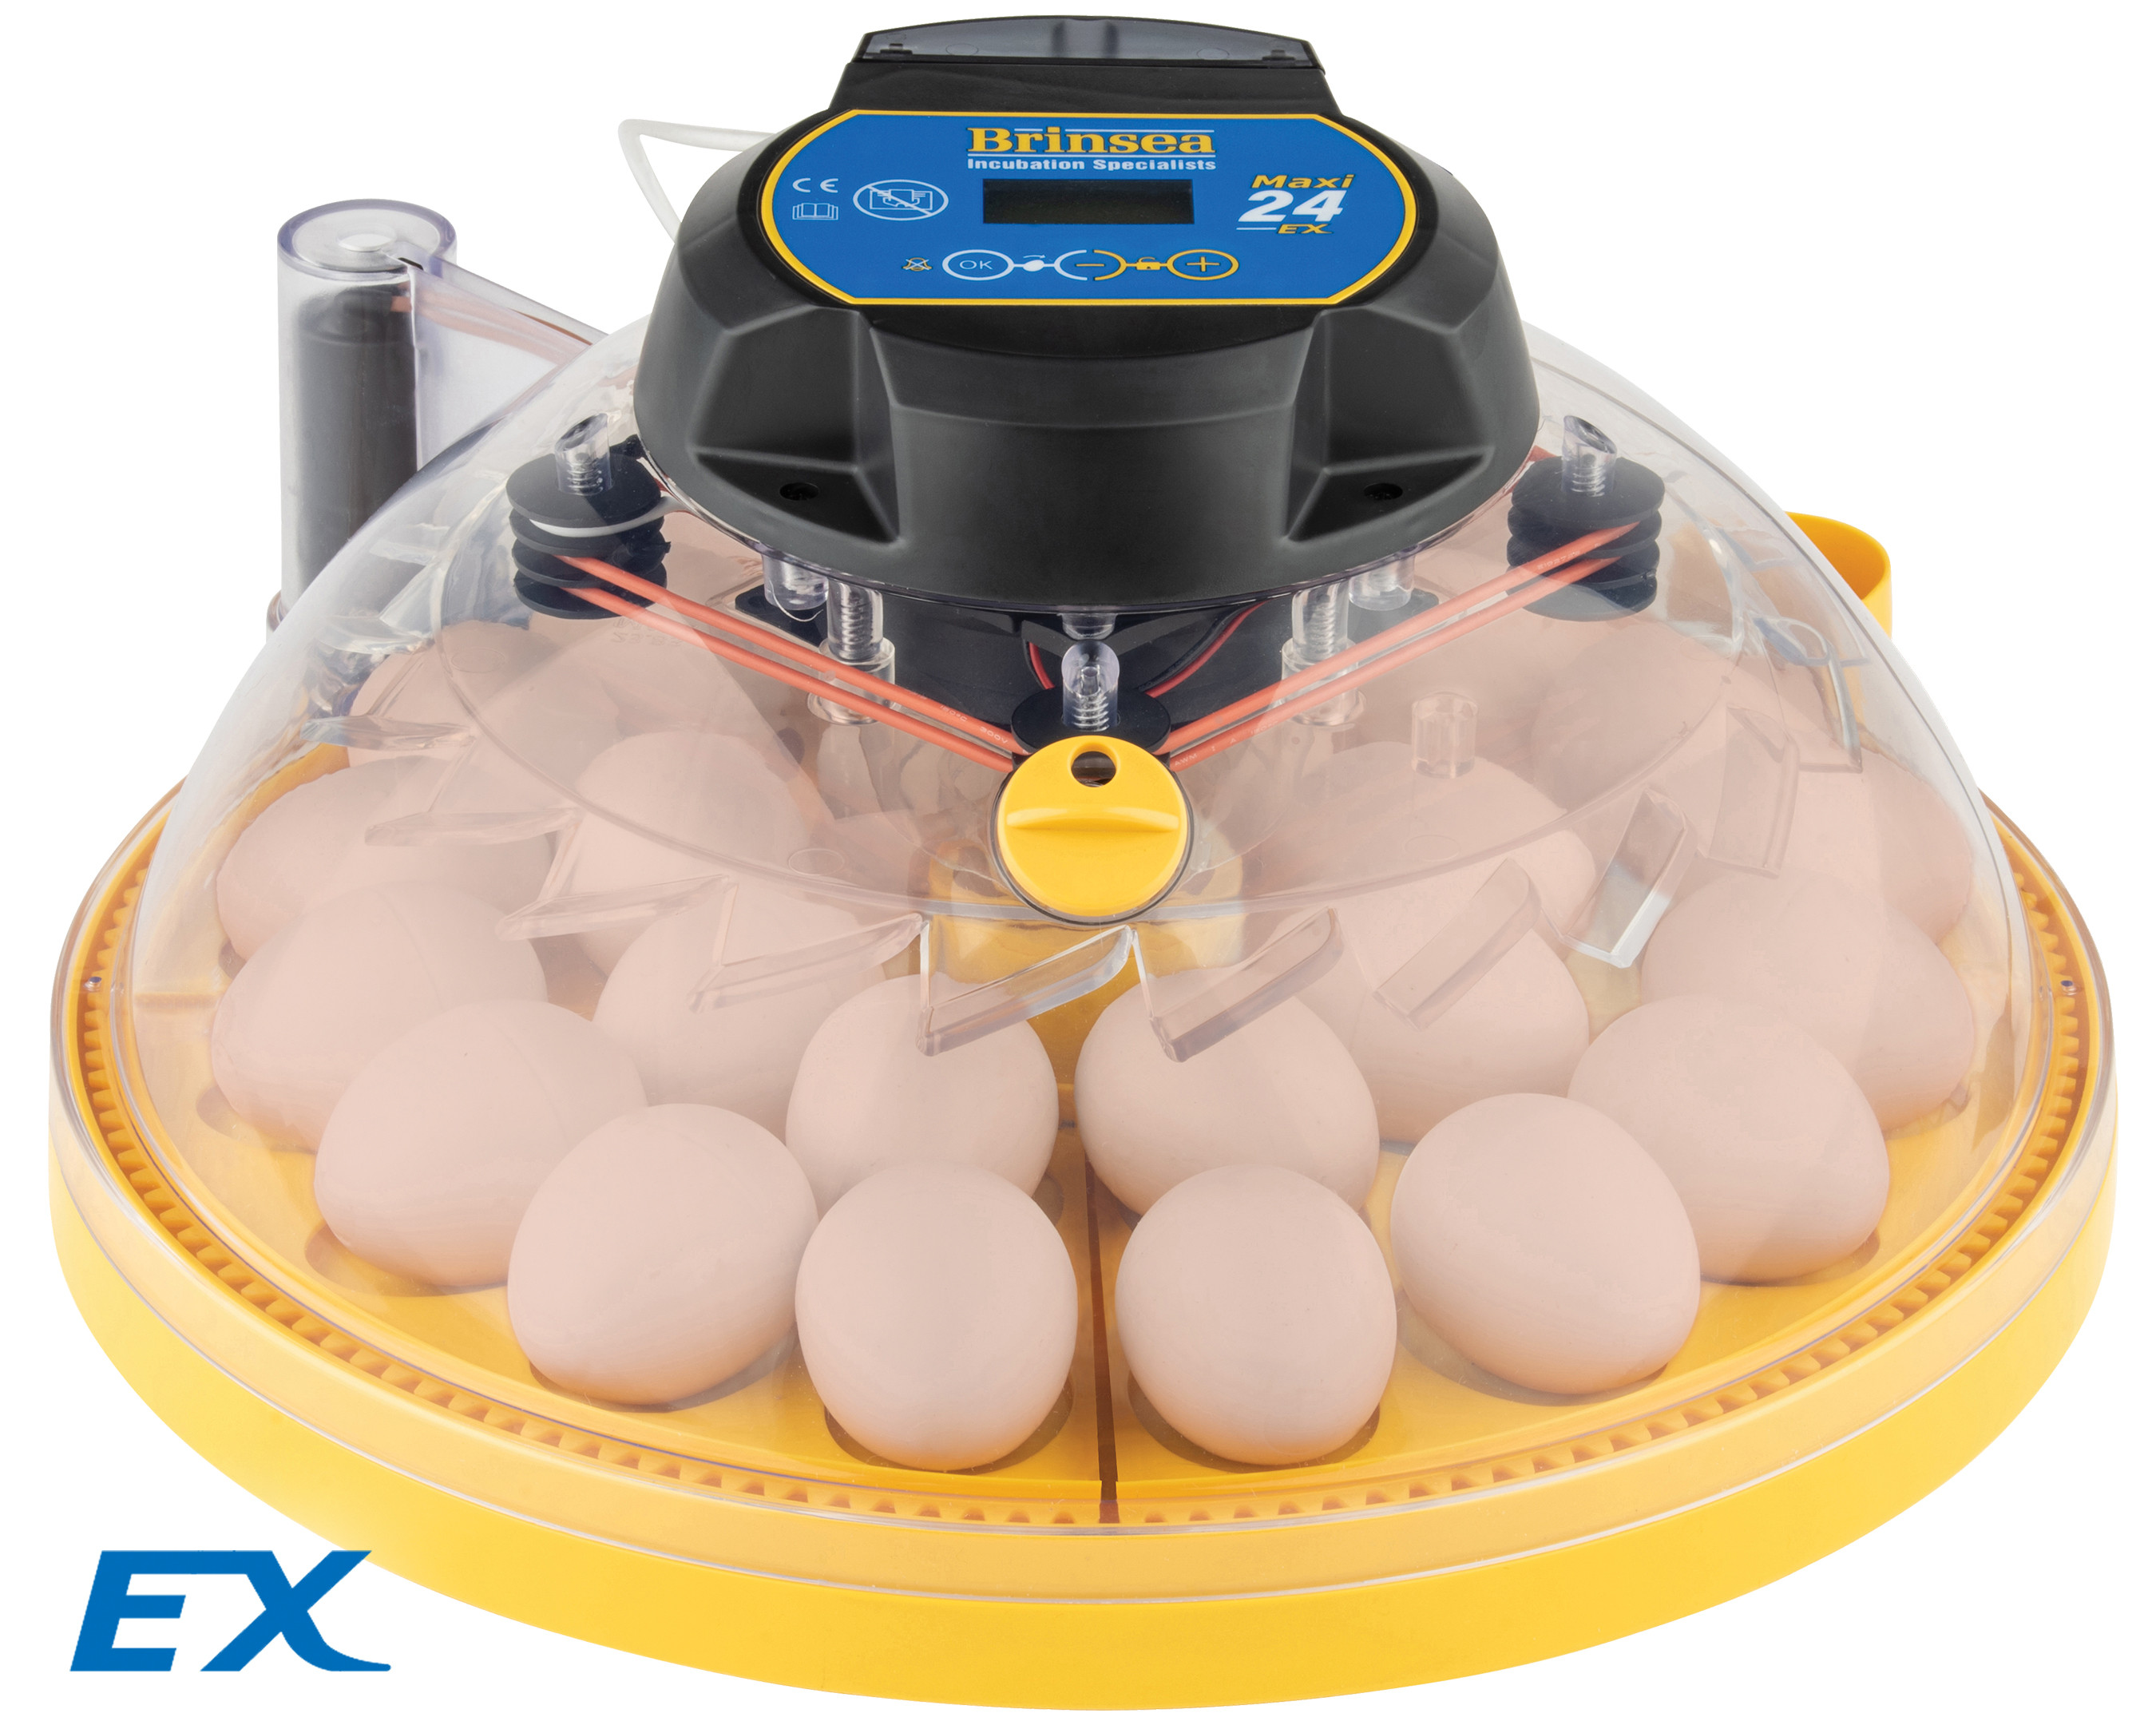 Couveuse Brinsea Maxi 24 EX 24 / 40 oeufs automatique régulation de l'humidité automatique